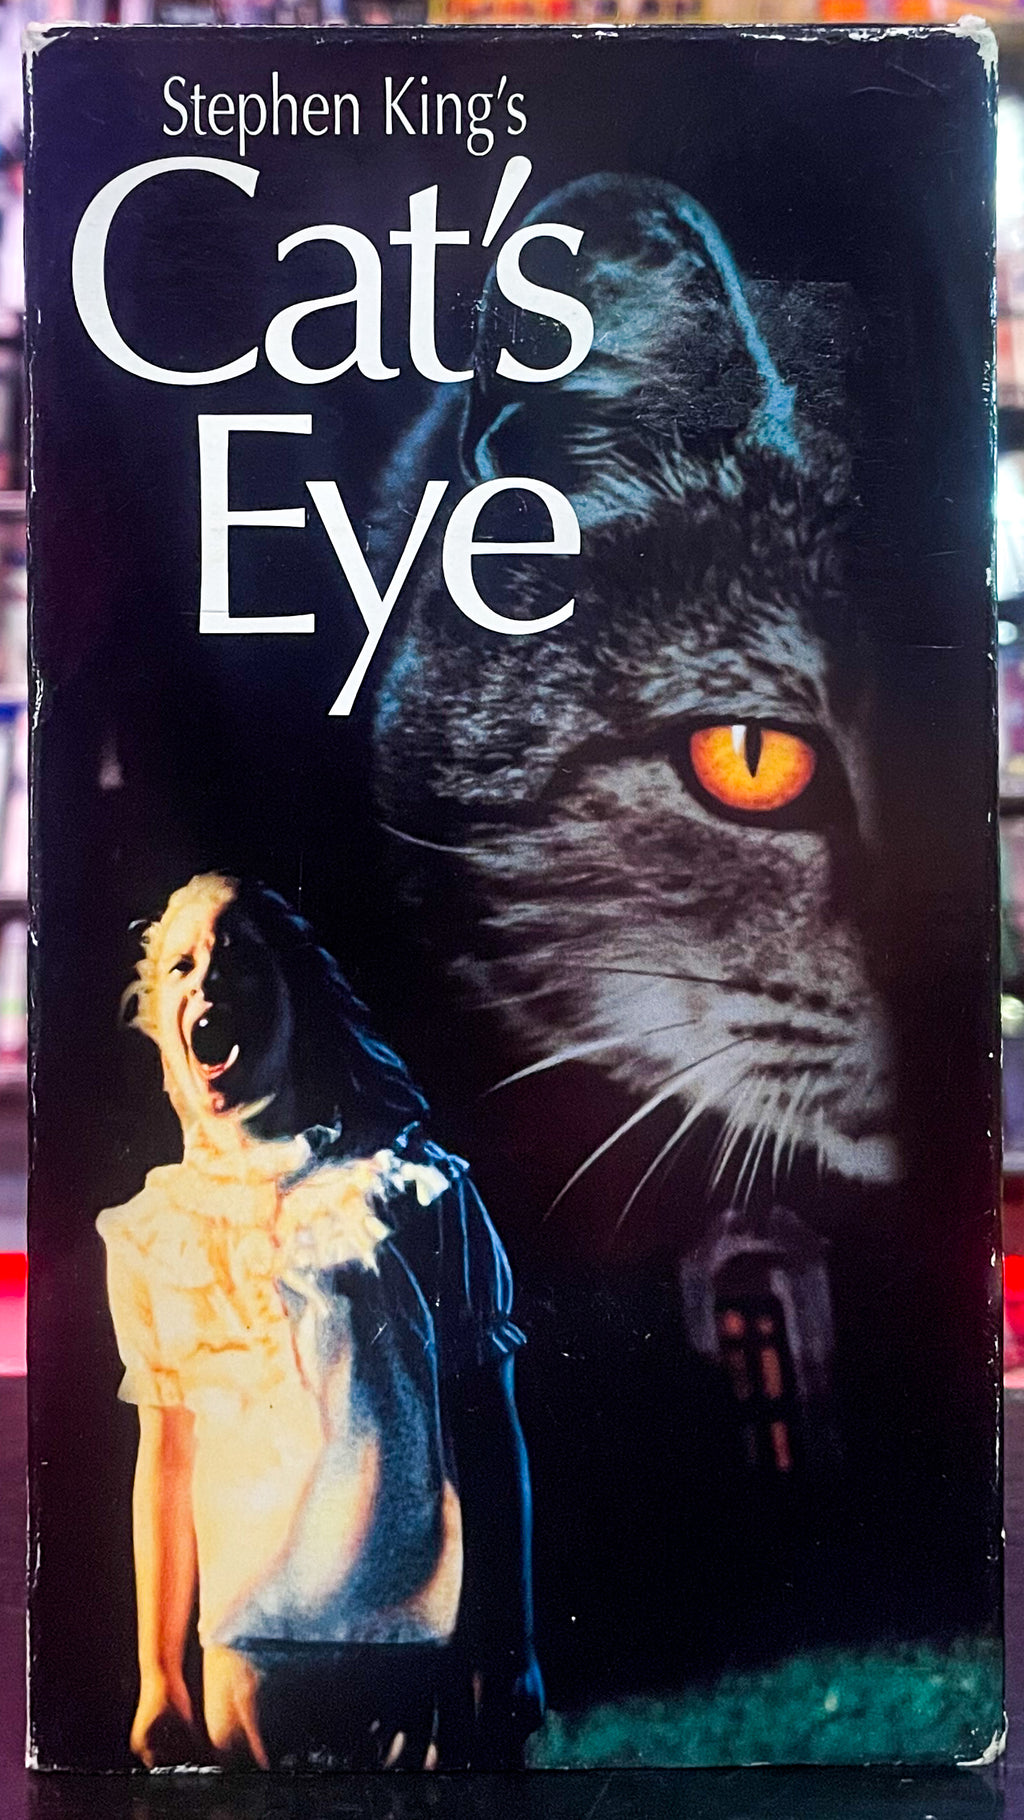 Stephen King’s Cat’s Eye